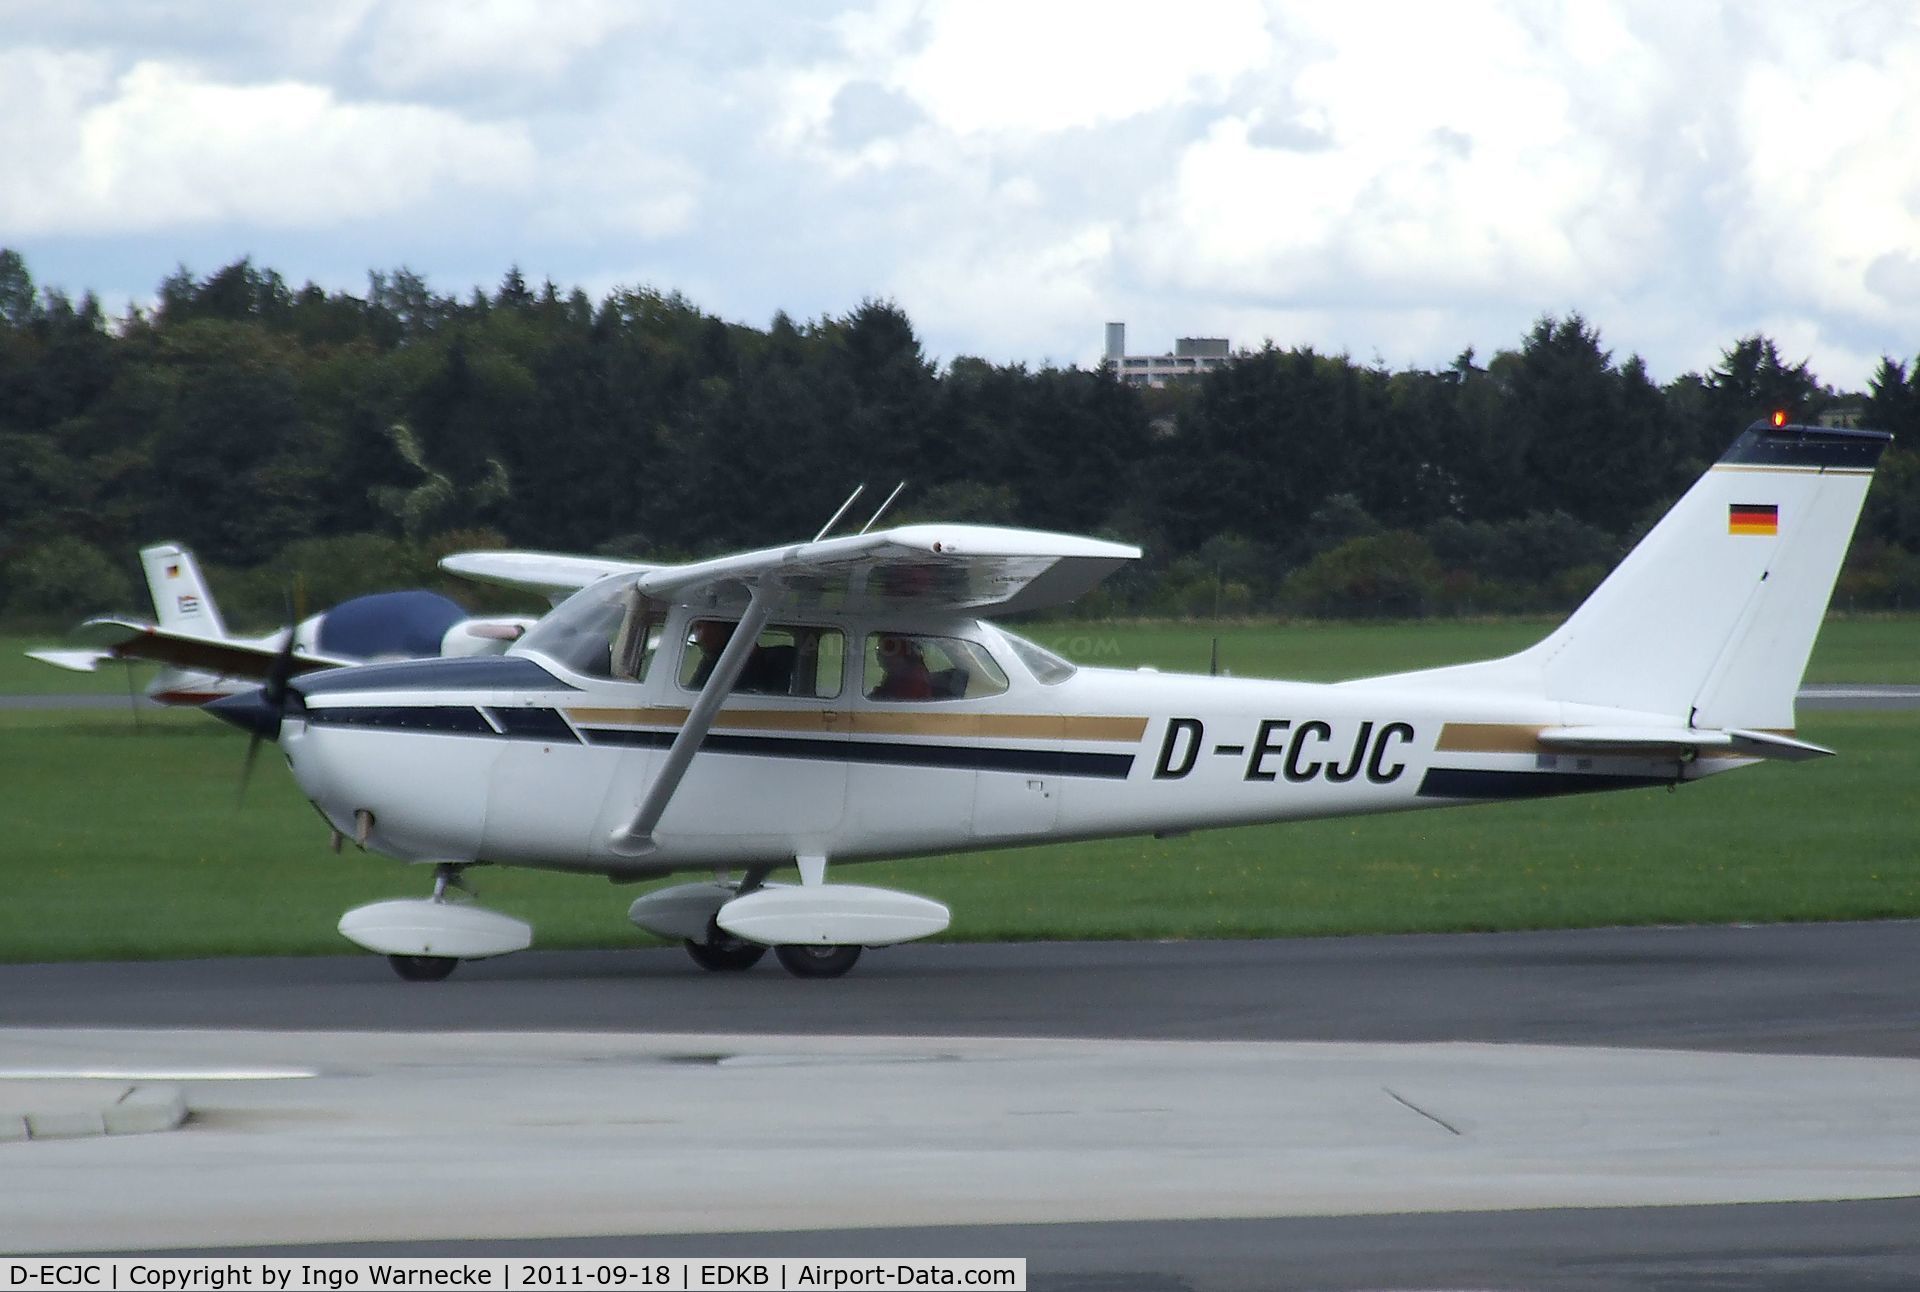 D-ECJC, 1970 Reims F172H Skyhawk C/N 0734, Cessna (Reims) F172H at Bonn-Hangelar airfield